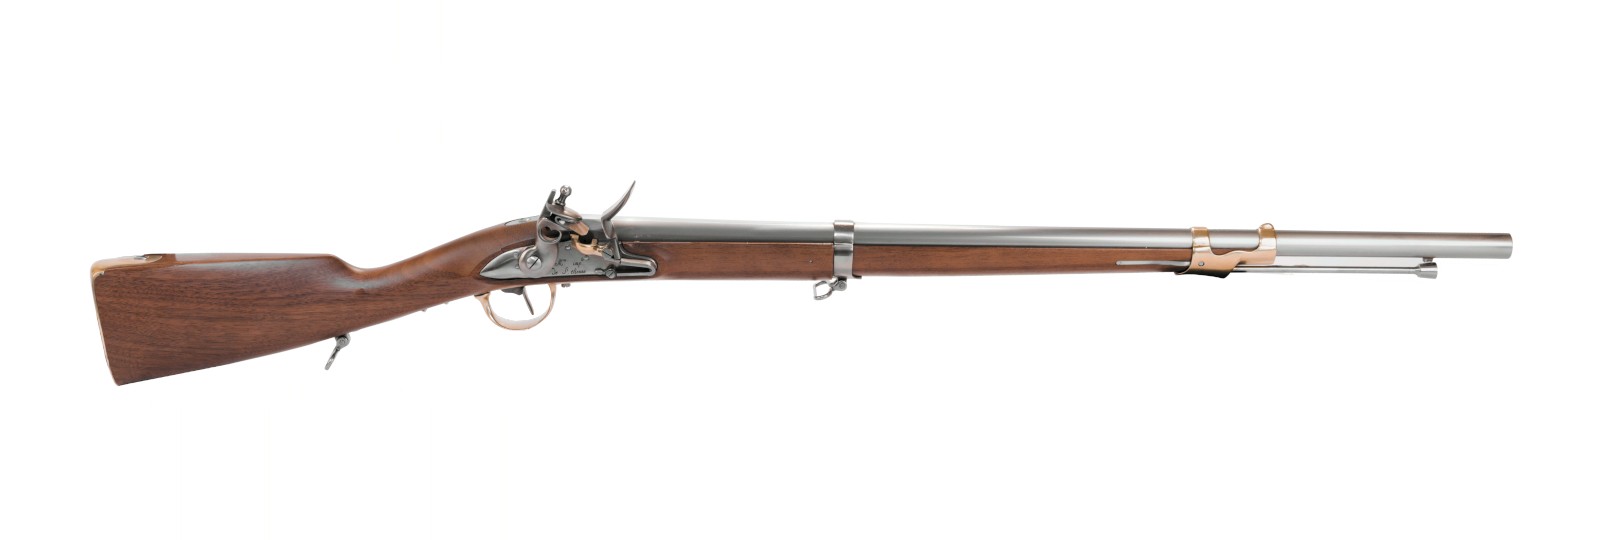 An IX de cavallerie Rifle